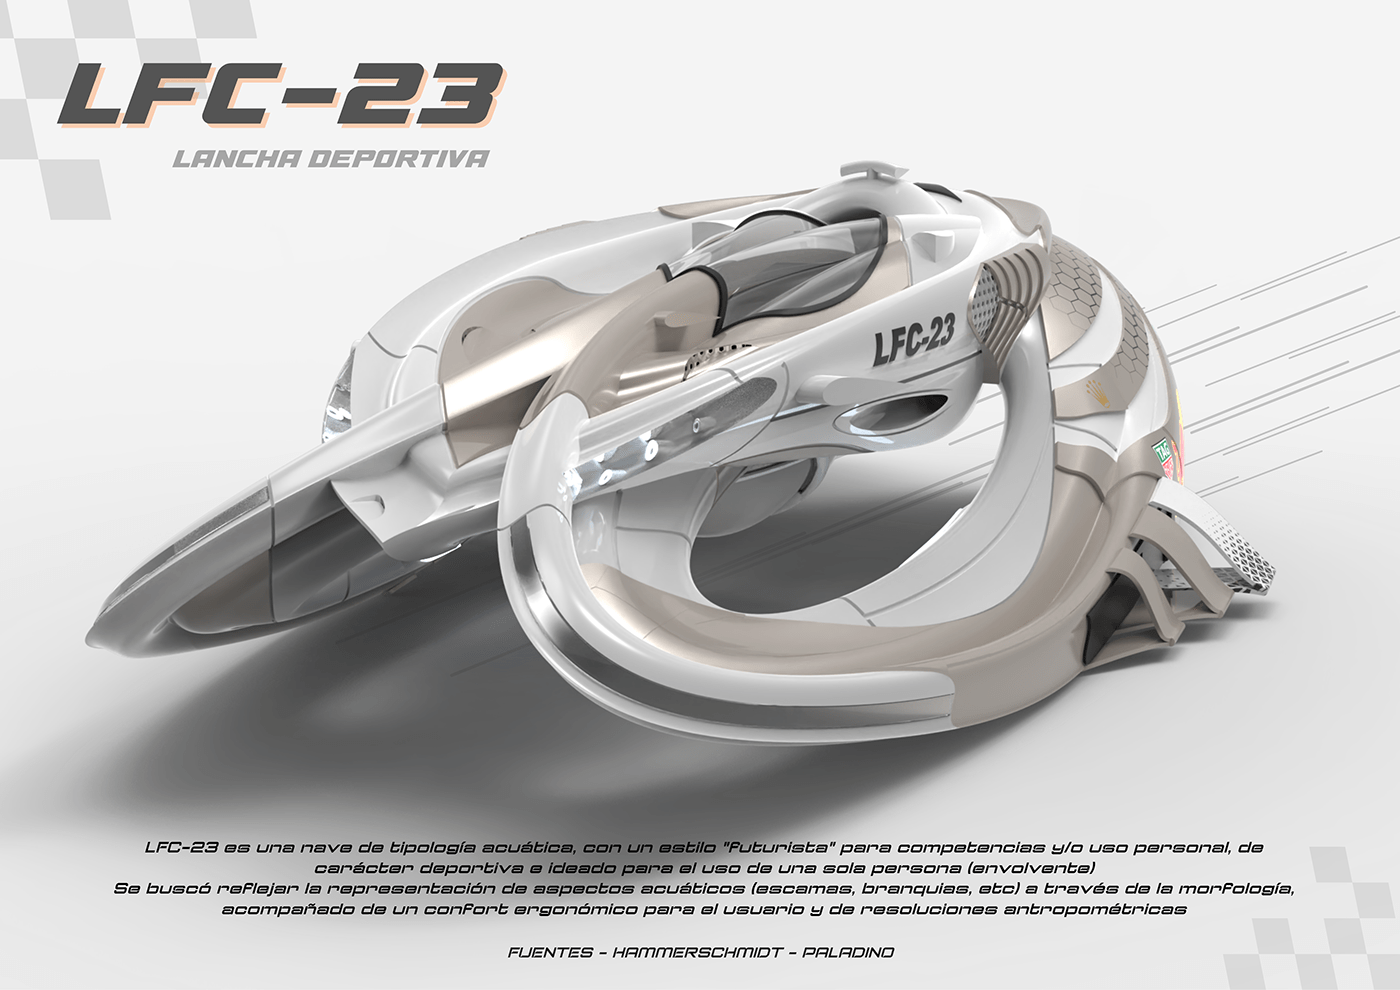 diseño diseño industrial boat modeling 3dmodeling Rhino